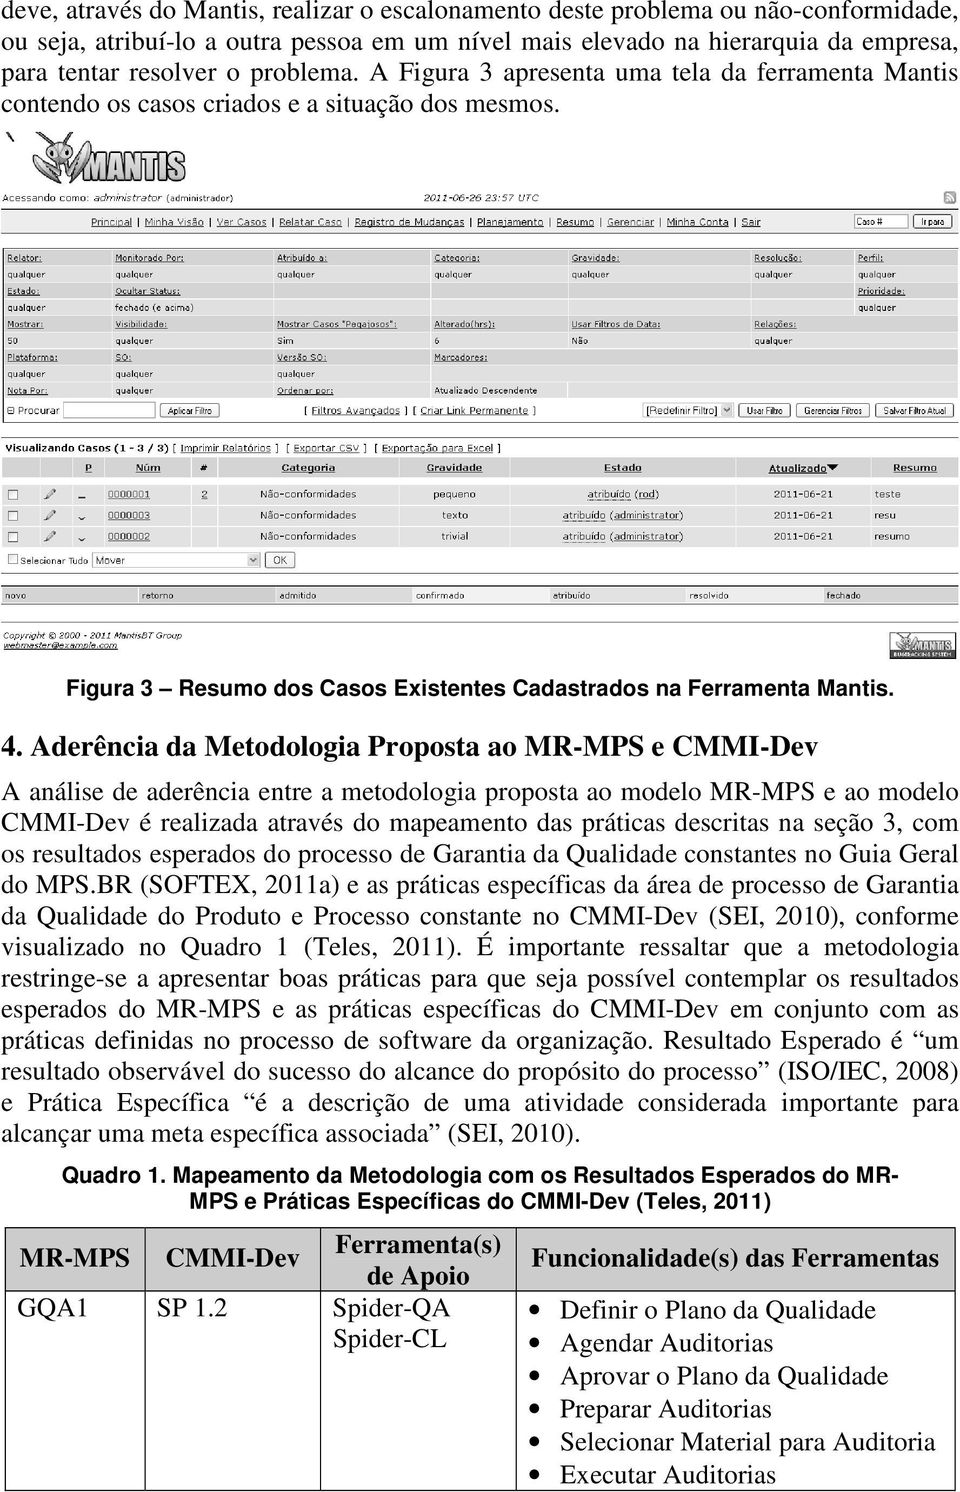 Aderência da Metodologia Proposta ao MR-MPS e CMMI-Dev A análise de aderência entre a metodologia proposta ao modelo MR-MPS e ao modelo CMMI-Dev é realizada através do mapeamento das práticas